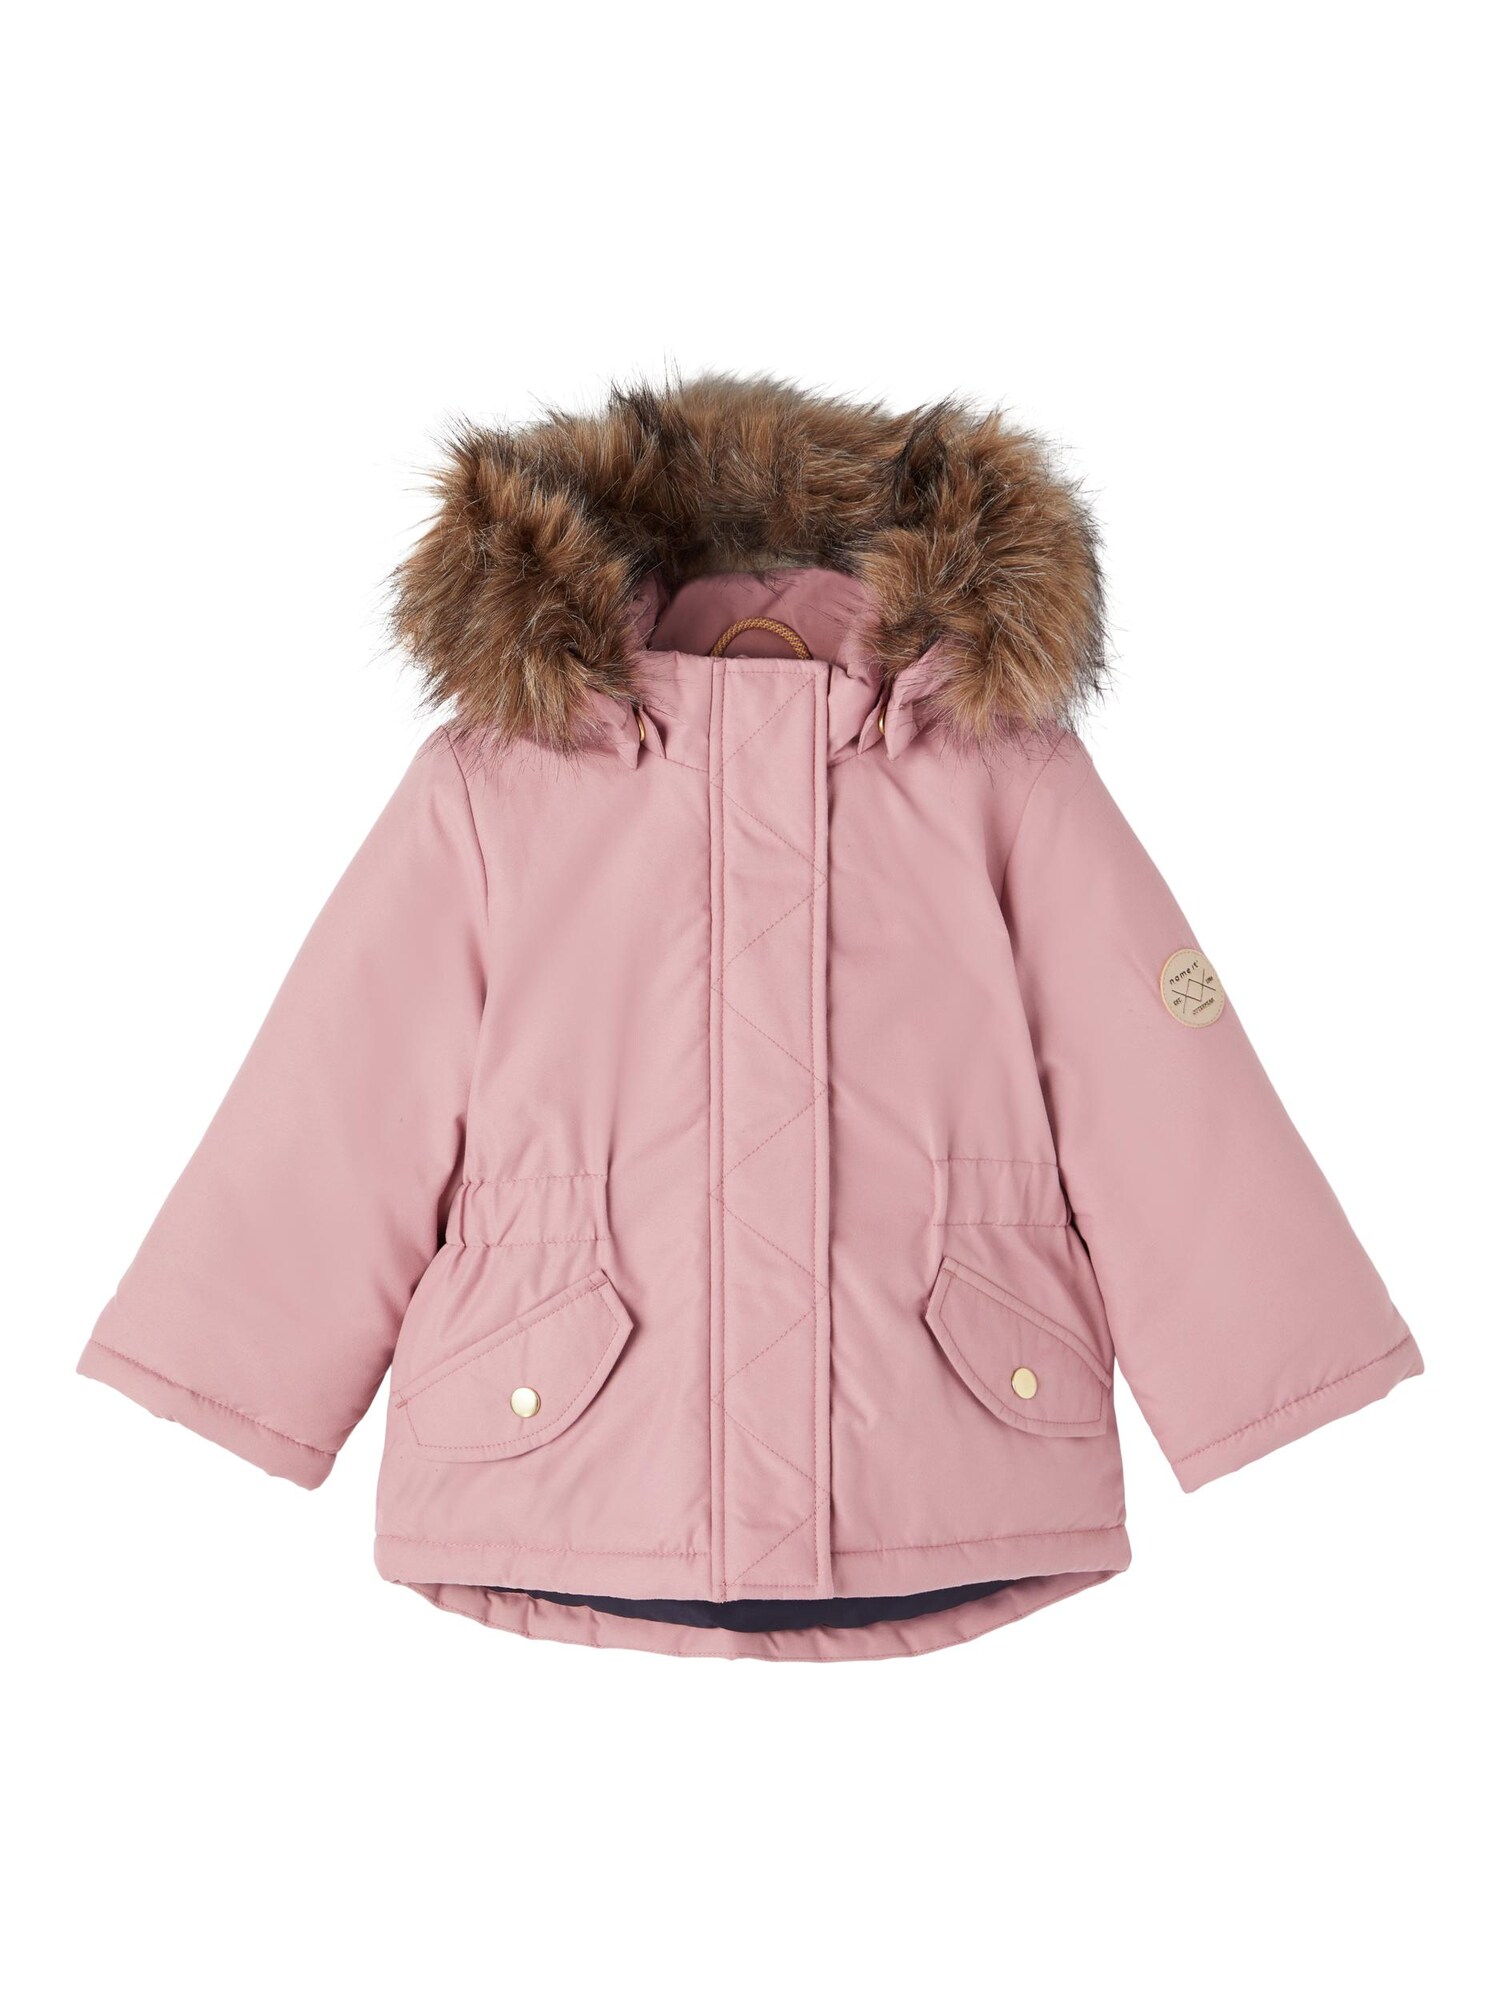 NAME IT Zimska jakna 'Mace'  smeđa / roza